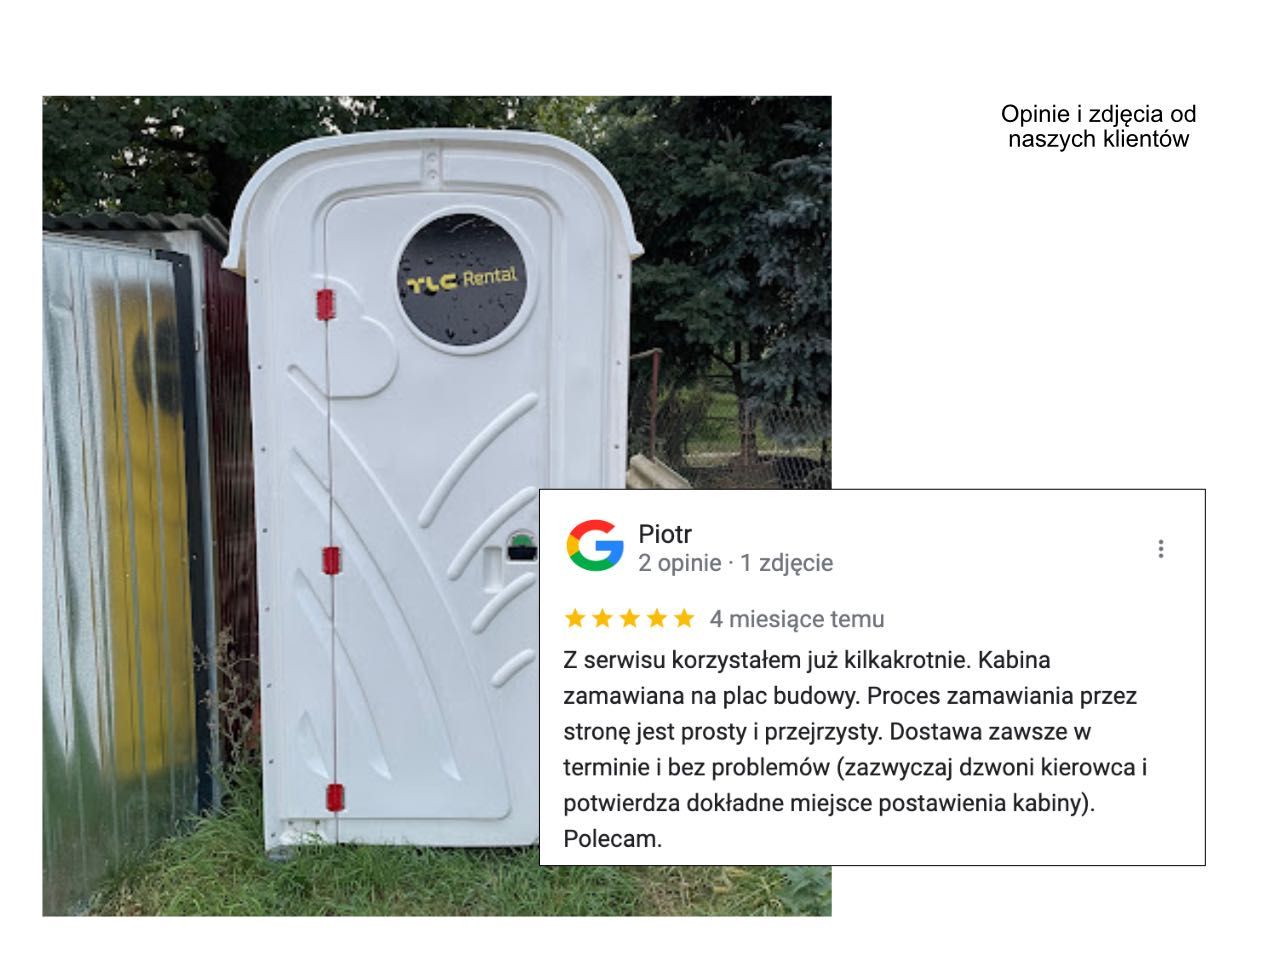 Toalety przenośne w Ciechanowie i okolicy. Porównaj ceny 2 dostawców